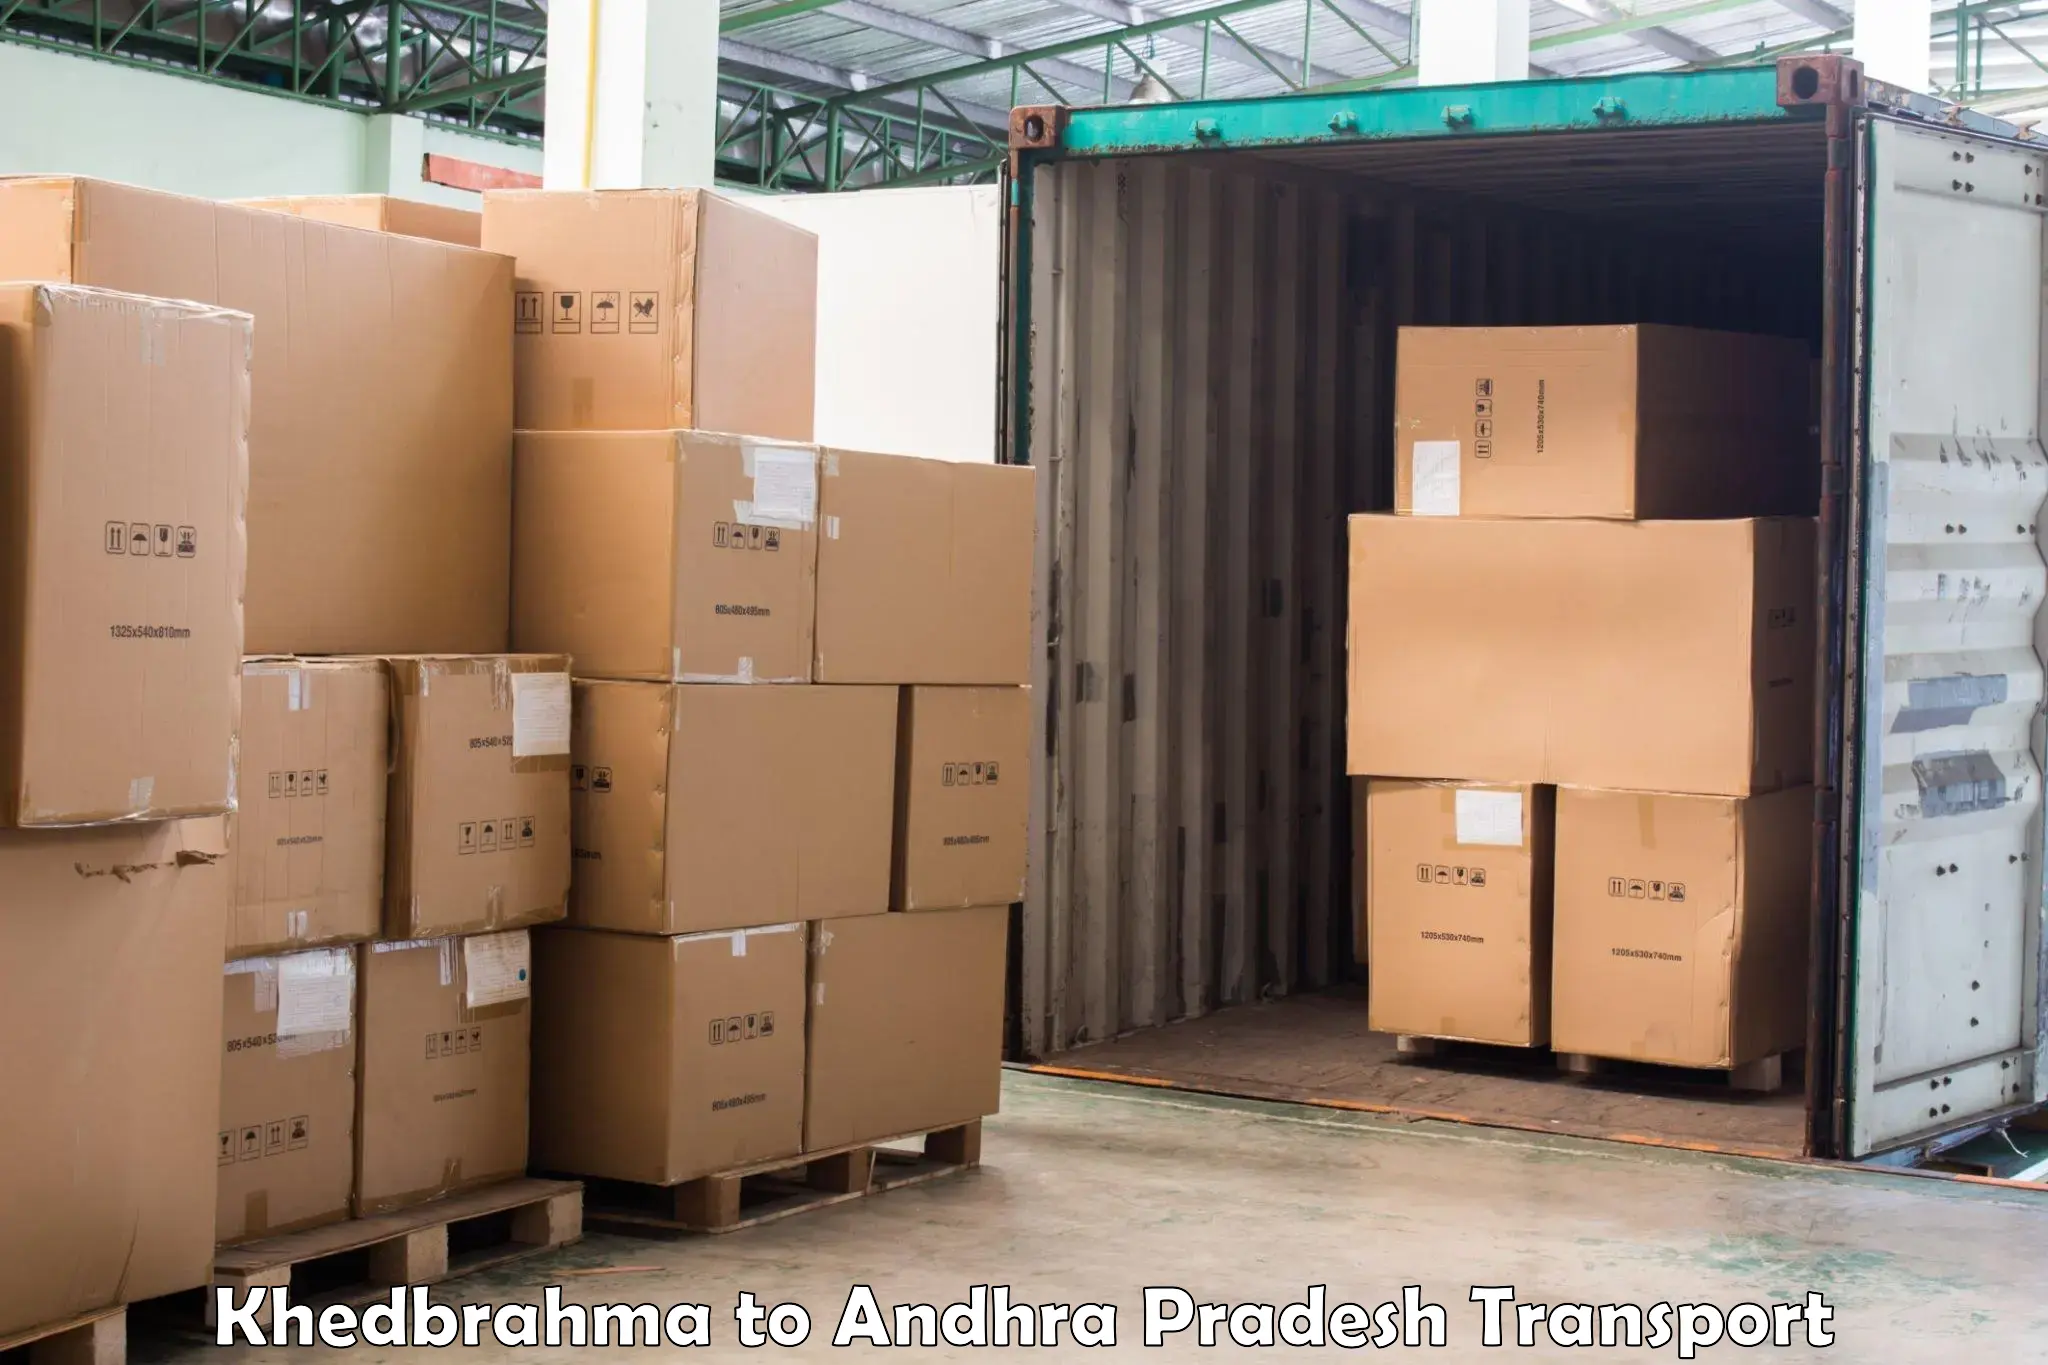 Daily parcel service transport Khedbrahma to Samalkot